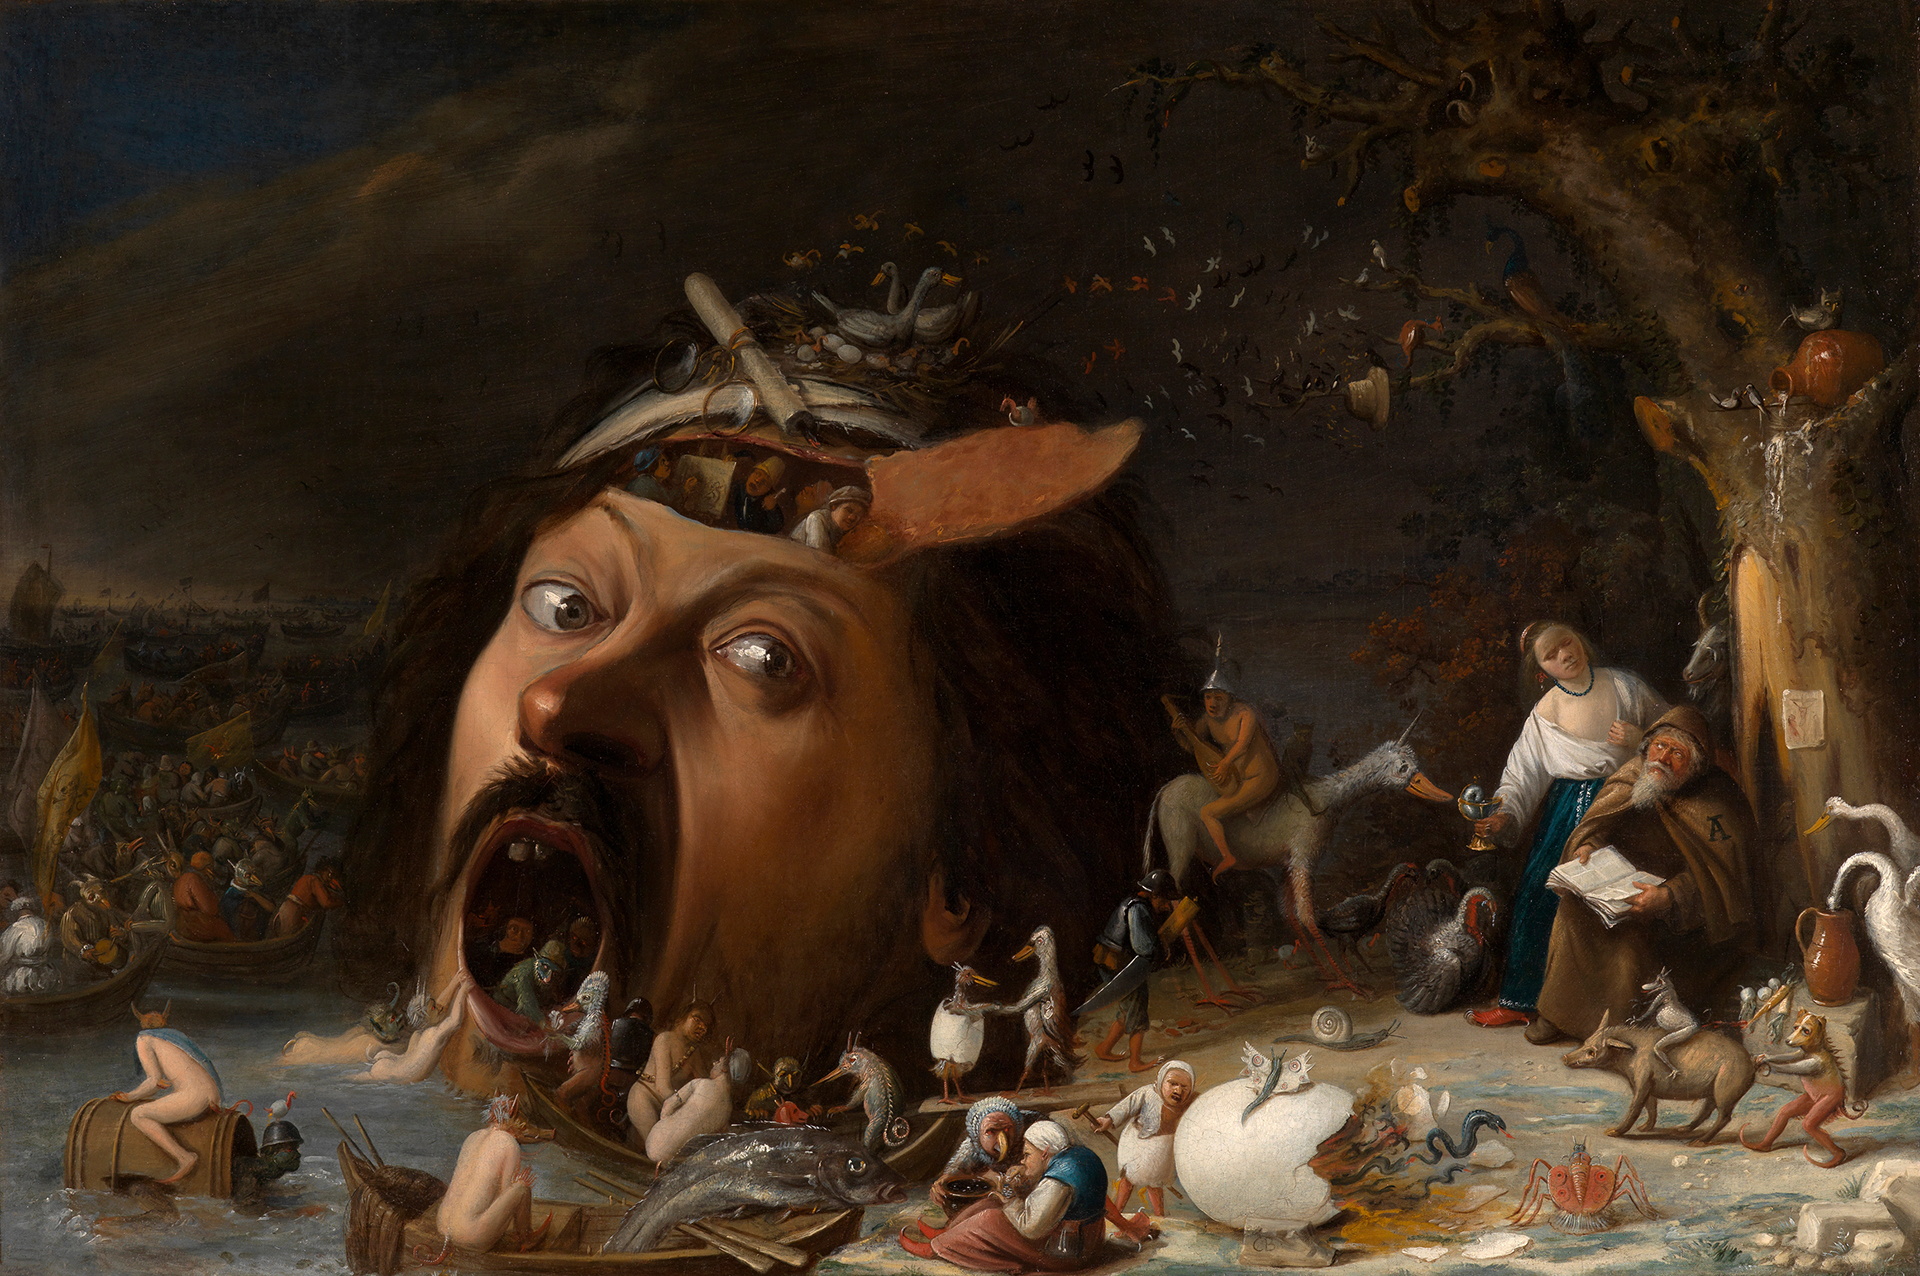 Zahlreiche Dämonen und Versuchungen sind rund um den großen, an Mund und Schädel geöffneten Kopf im Zentrum des Bildes zu sehen.